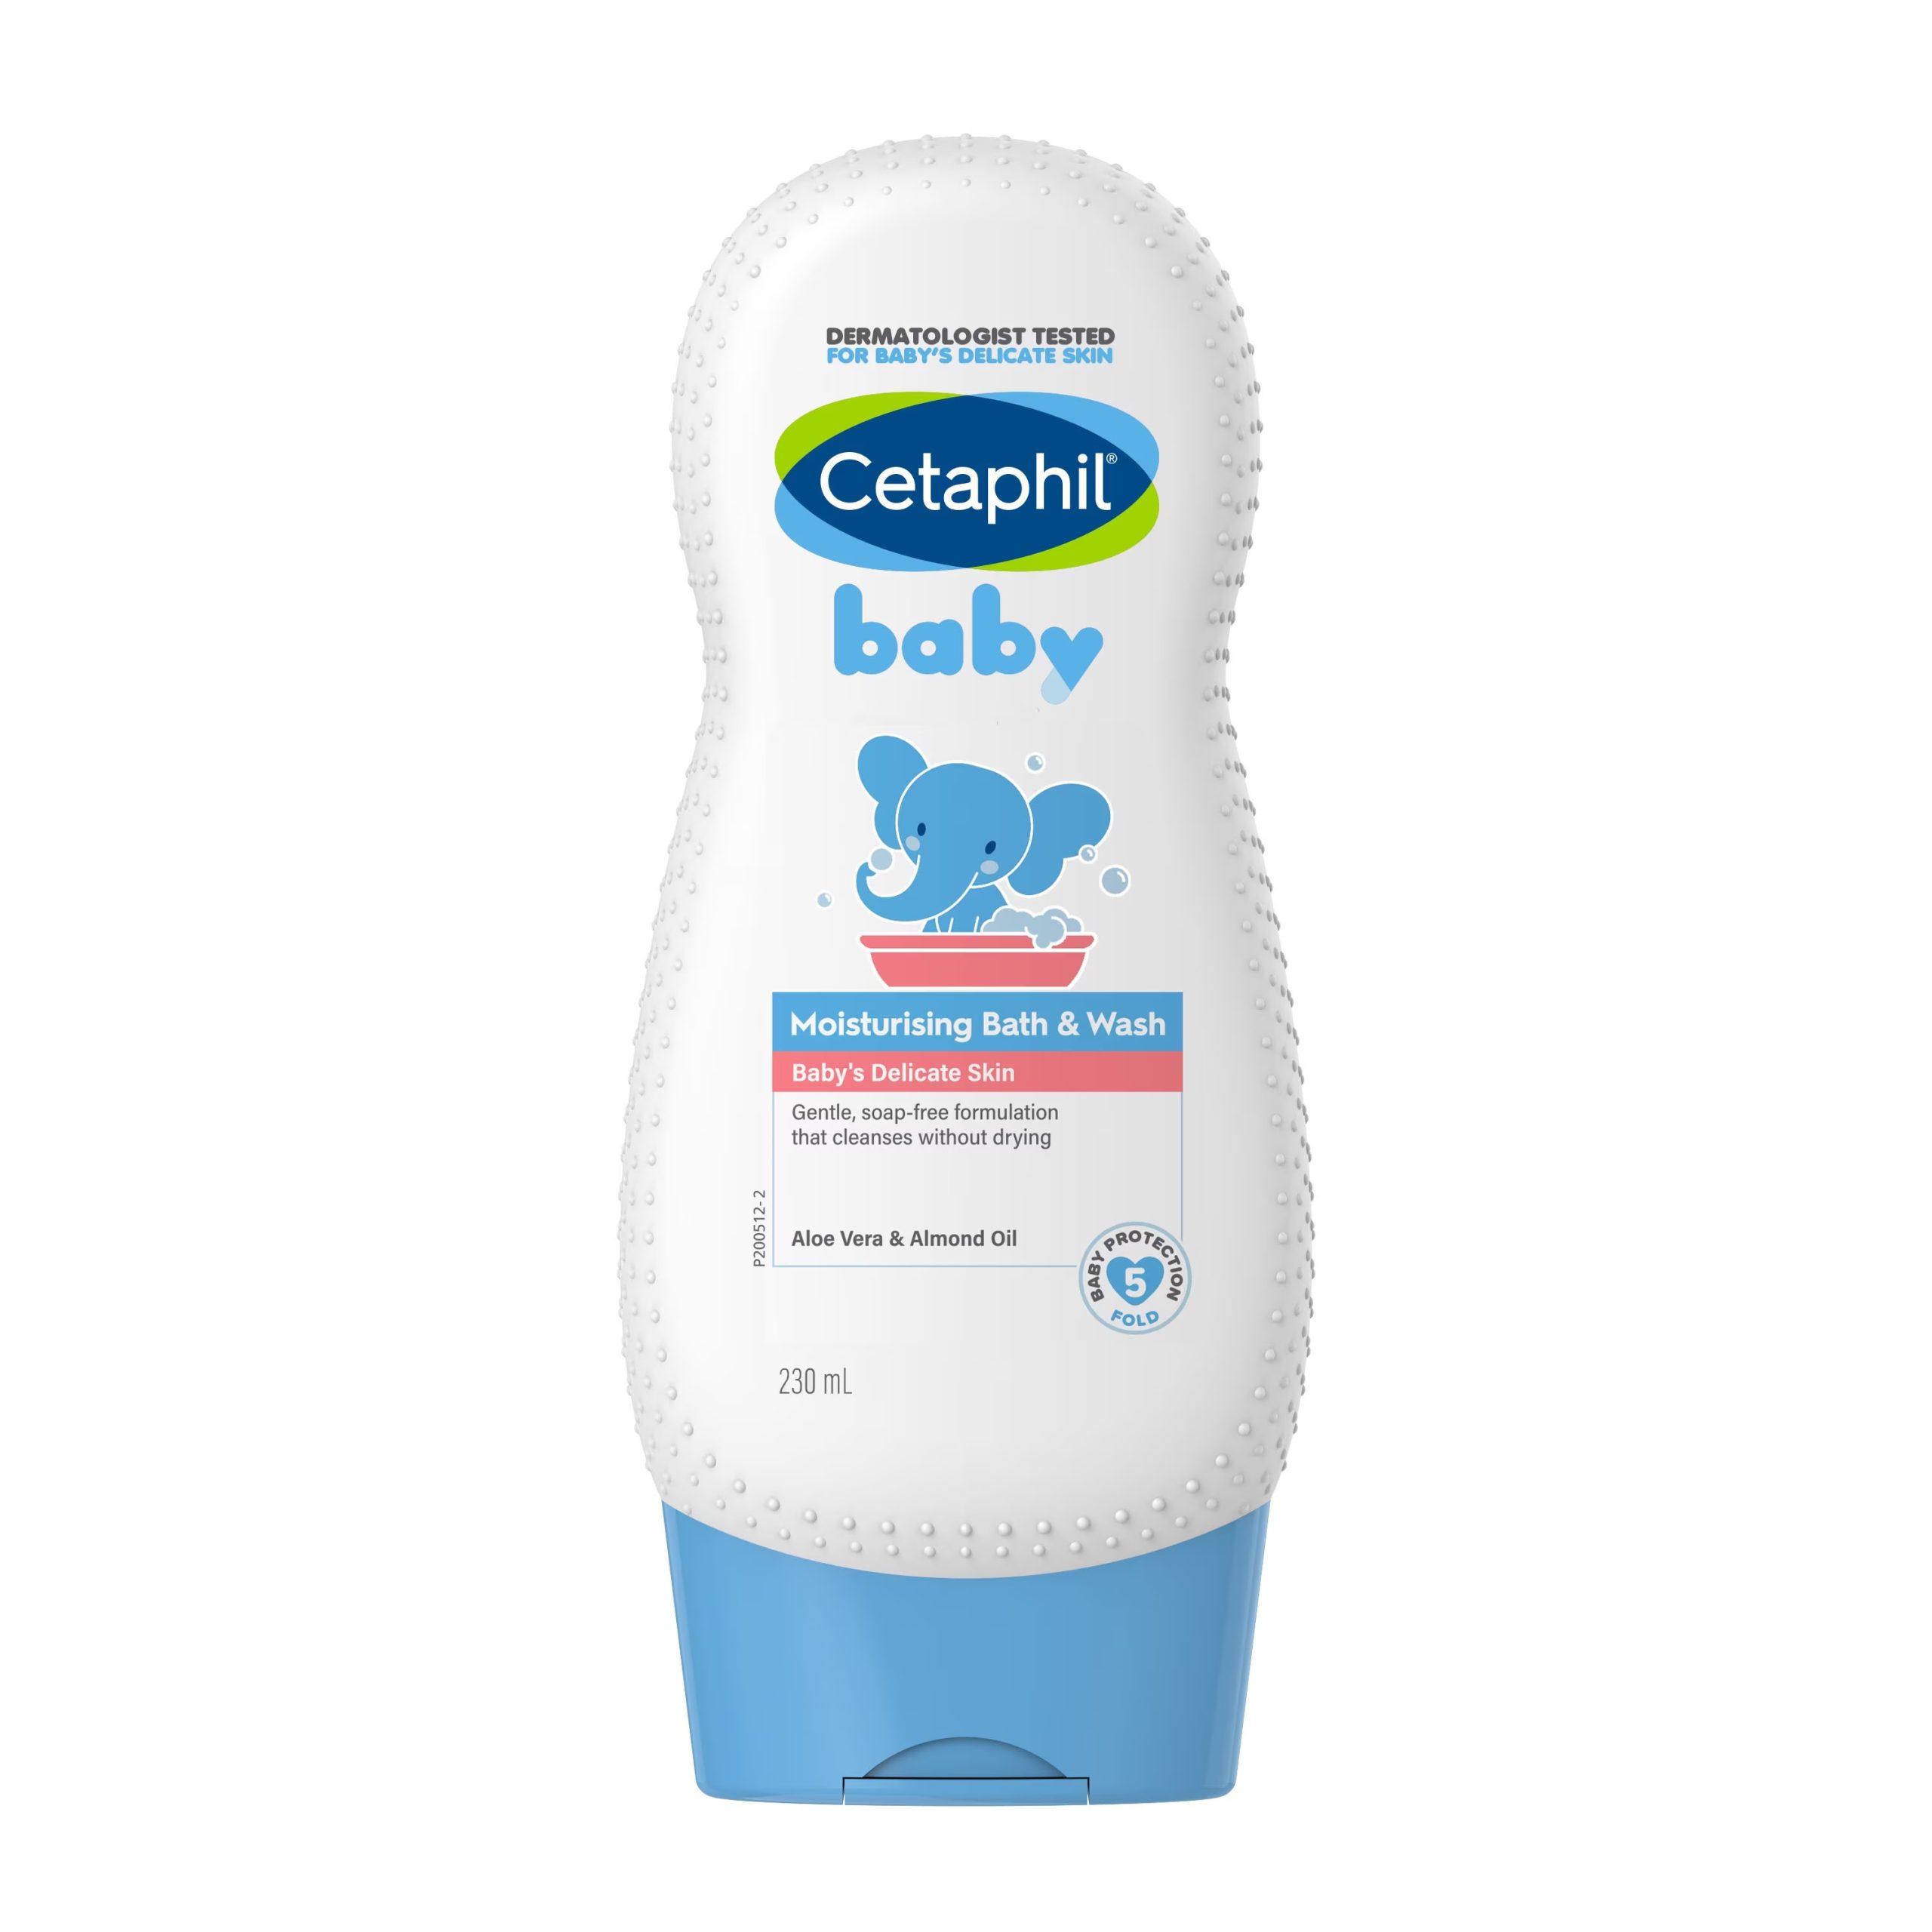 CETAPHIL BABY MOISTURISING BATH & WASH 230ML